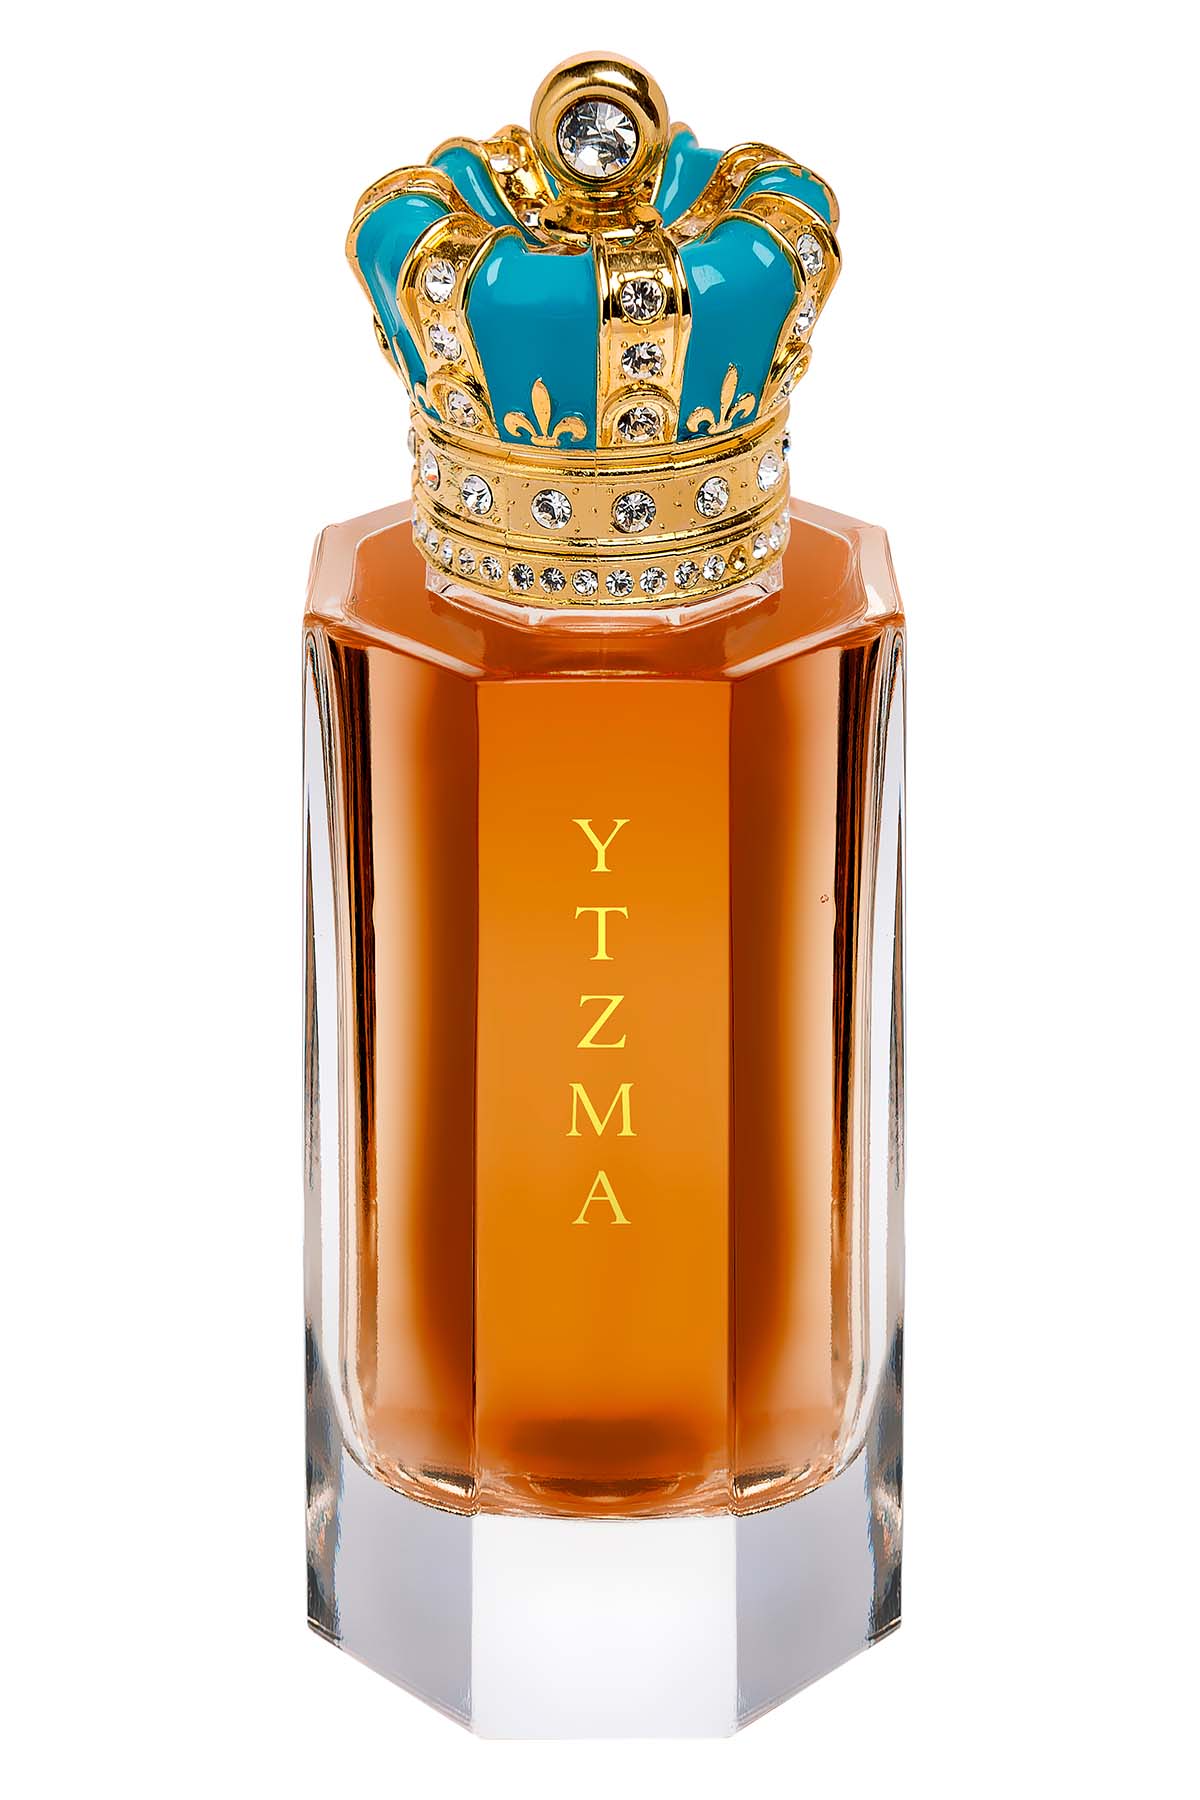 Royal Crown Ytzma Extrait de Parfum